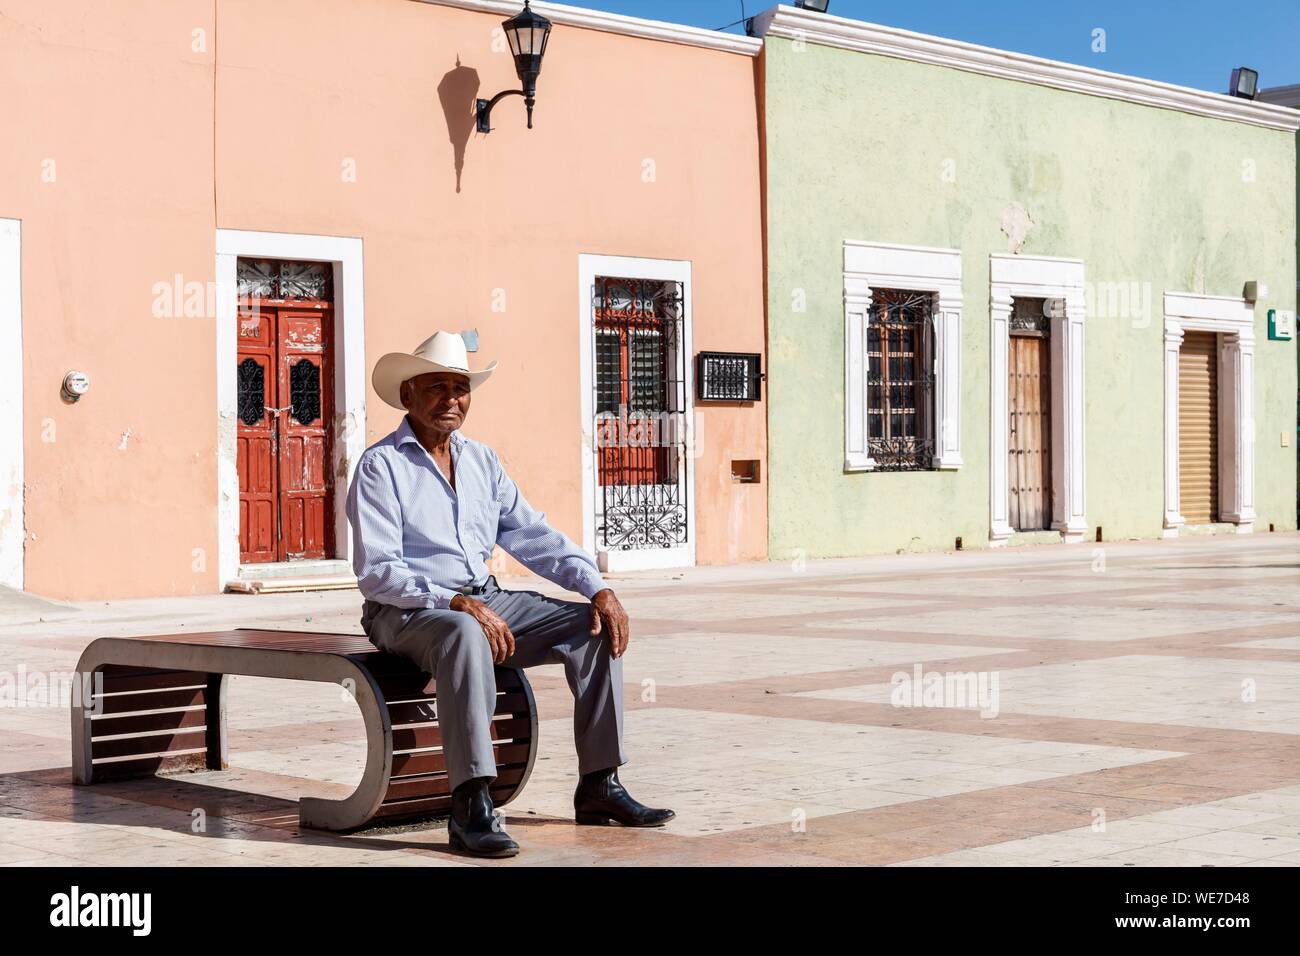 Mexiko, Campeche, Campeche, befestigte Stadt als Weltkulturerbe von der UNESCO, ein Mann mit einem Hut vor Häusern im Kolonialstil Stockfoto